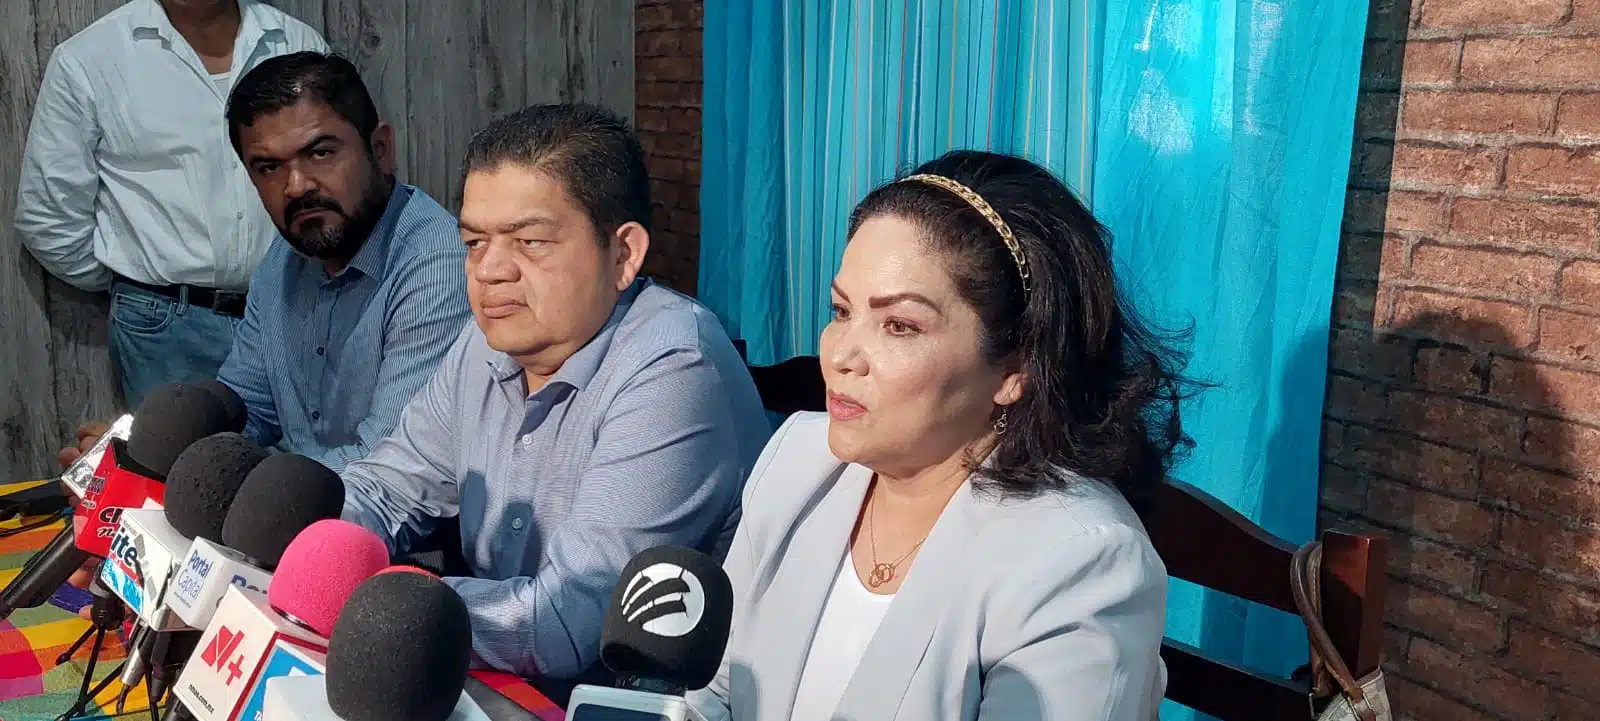 El Centro de Conciliación Laboral de Sinaloa, sigue recibiendo quejas de trabajadores contra patrones en las 4 oficinas que se tienen en el estado.